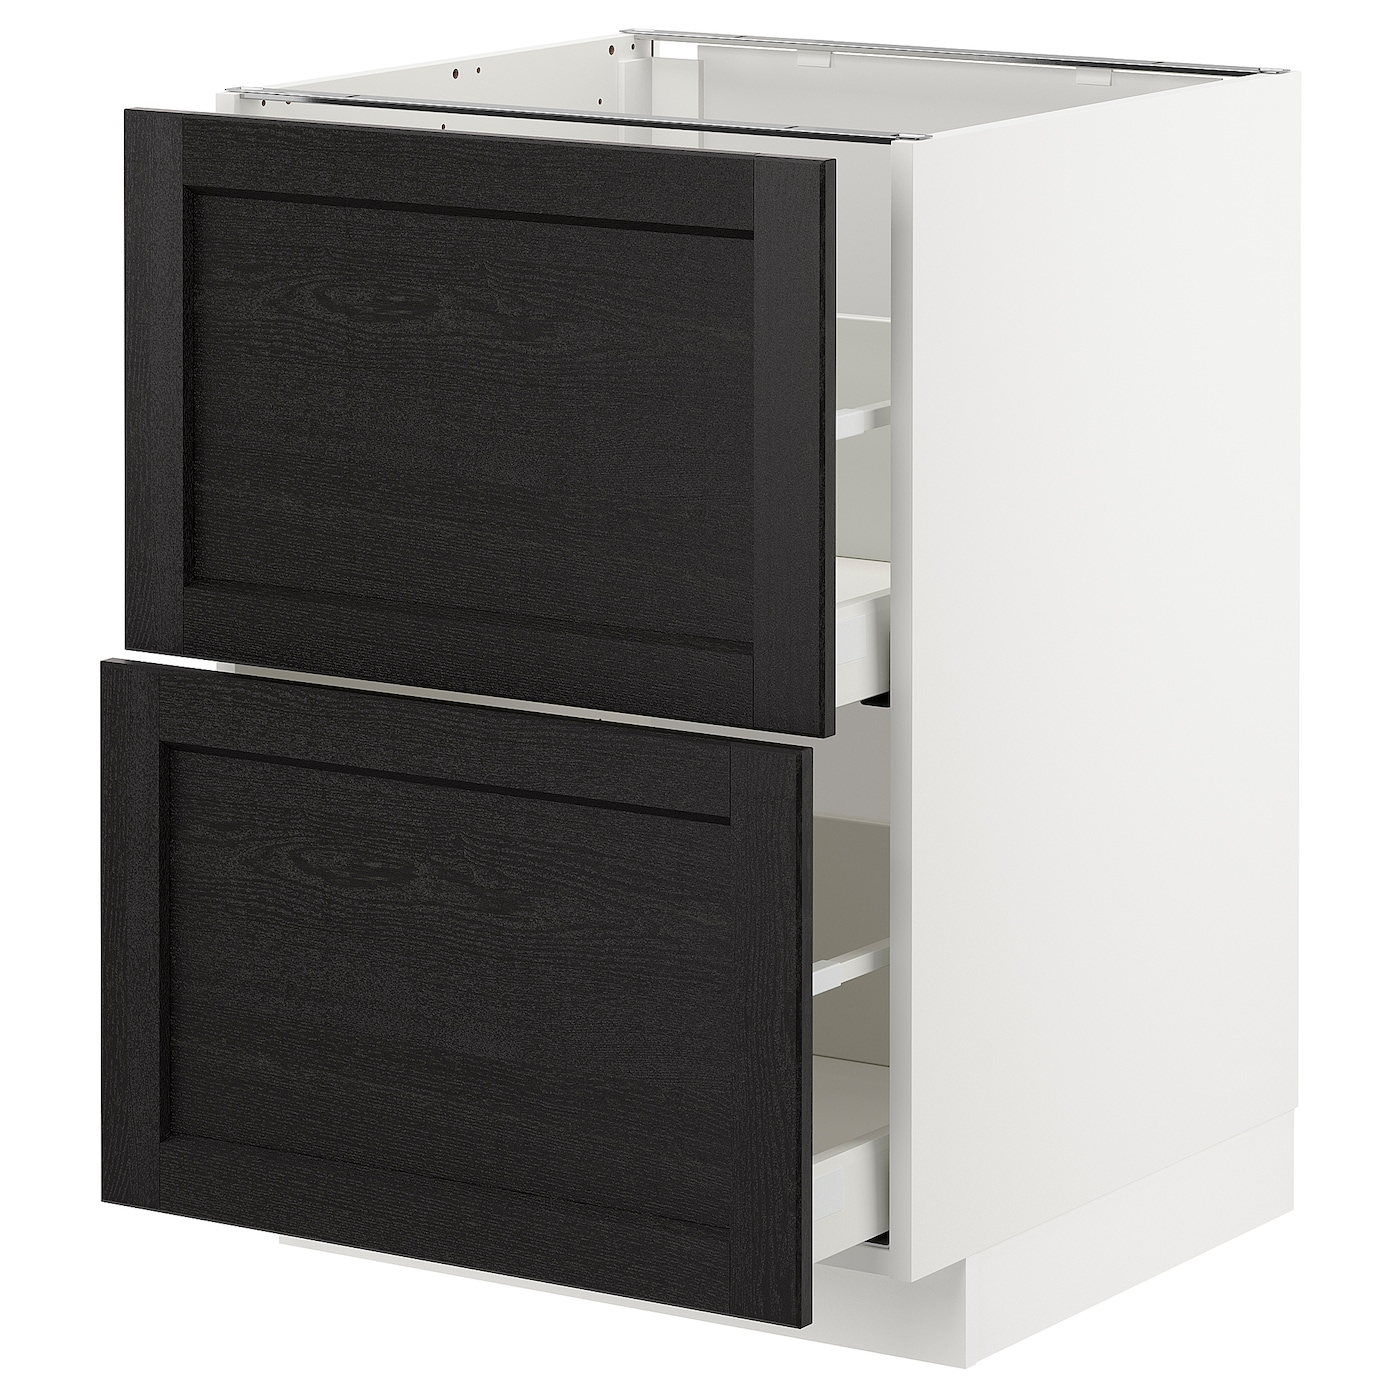 Напольный кухонный шкаф  - IKEA METOD MAXIMERA, 88x61,9x60см, белый/черный, МЕТОД МАКСИМЕРА ИКЕА